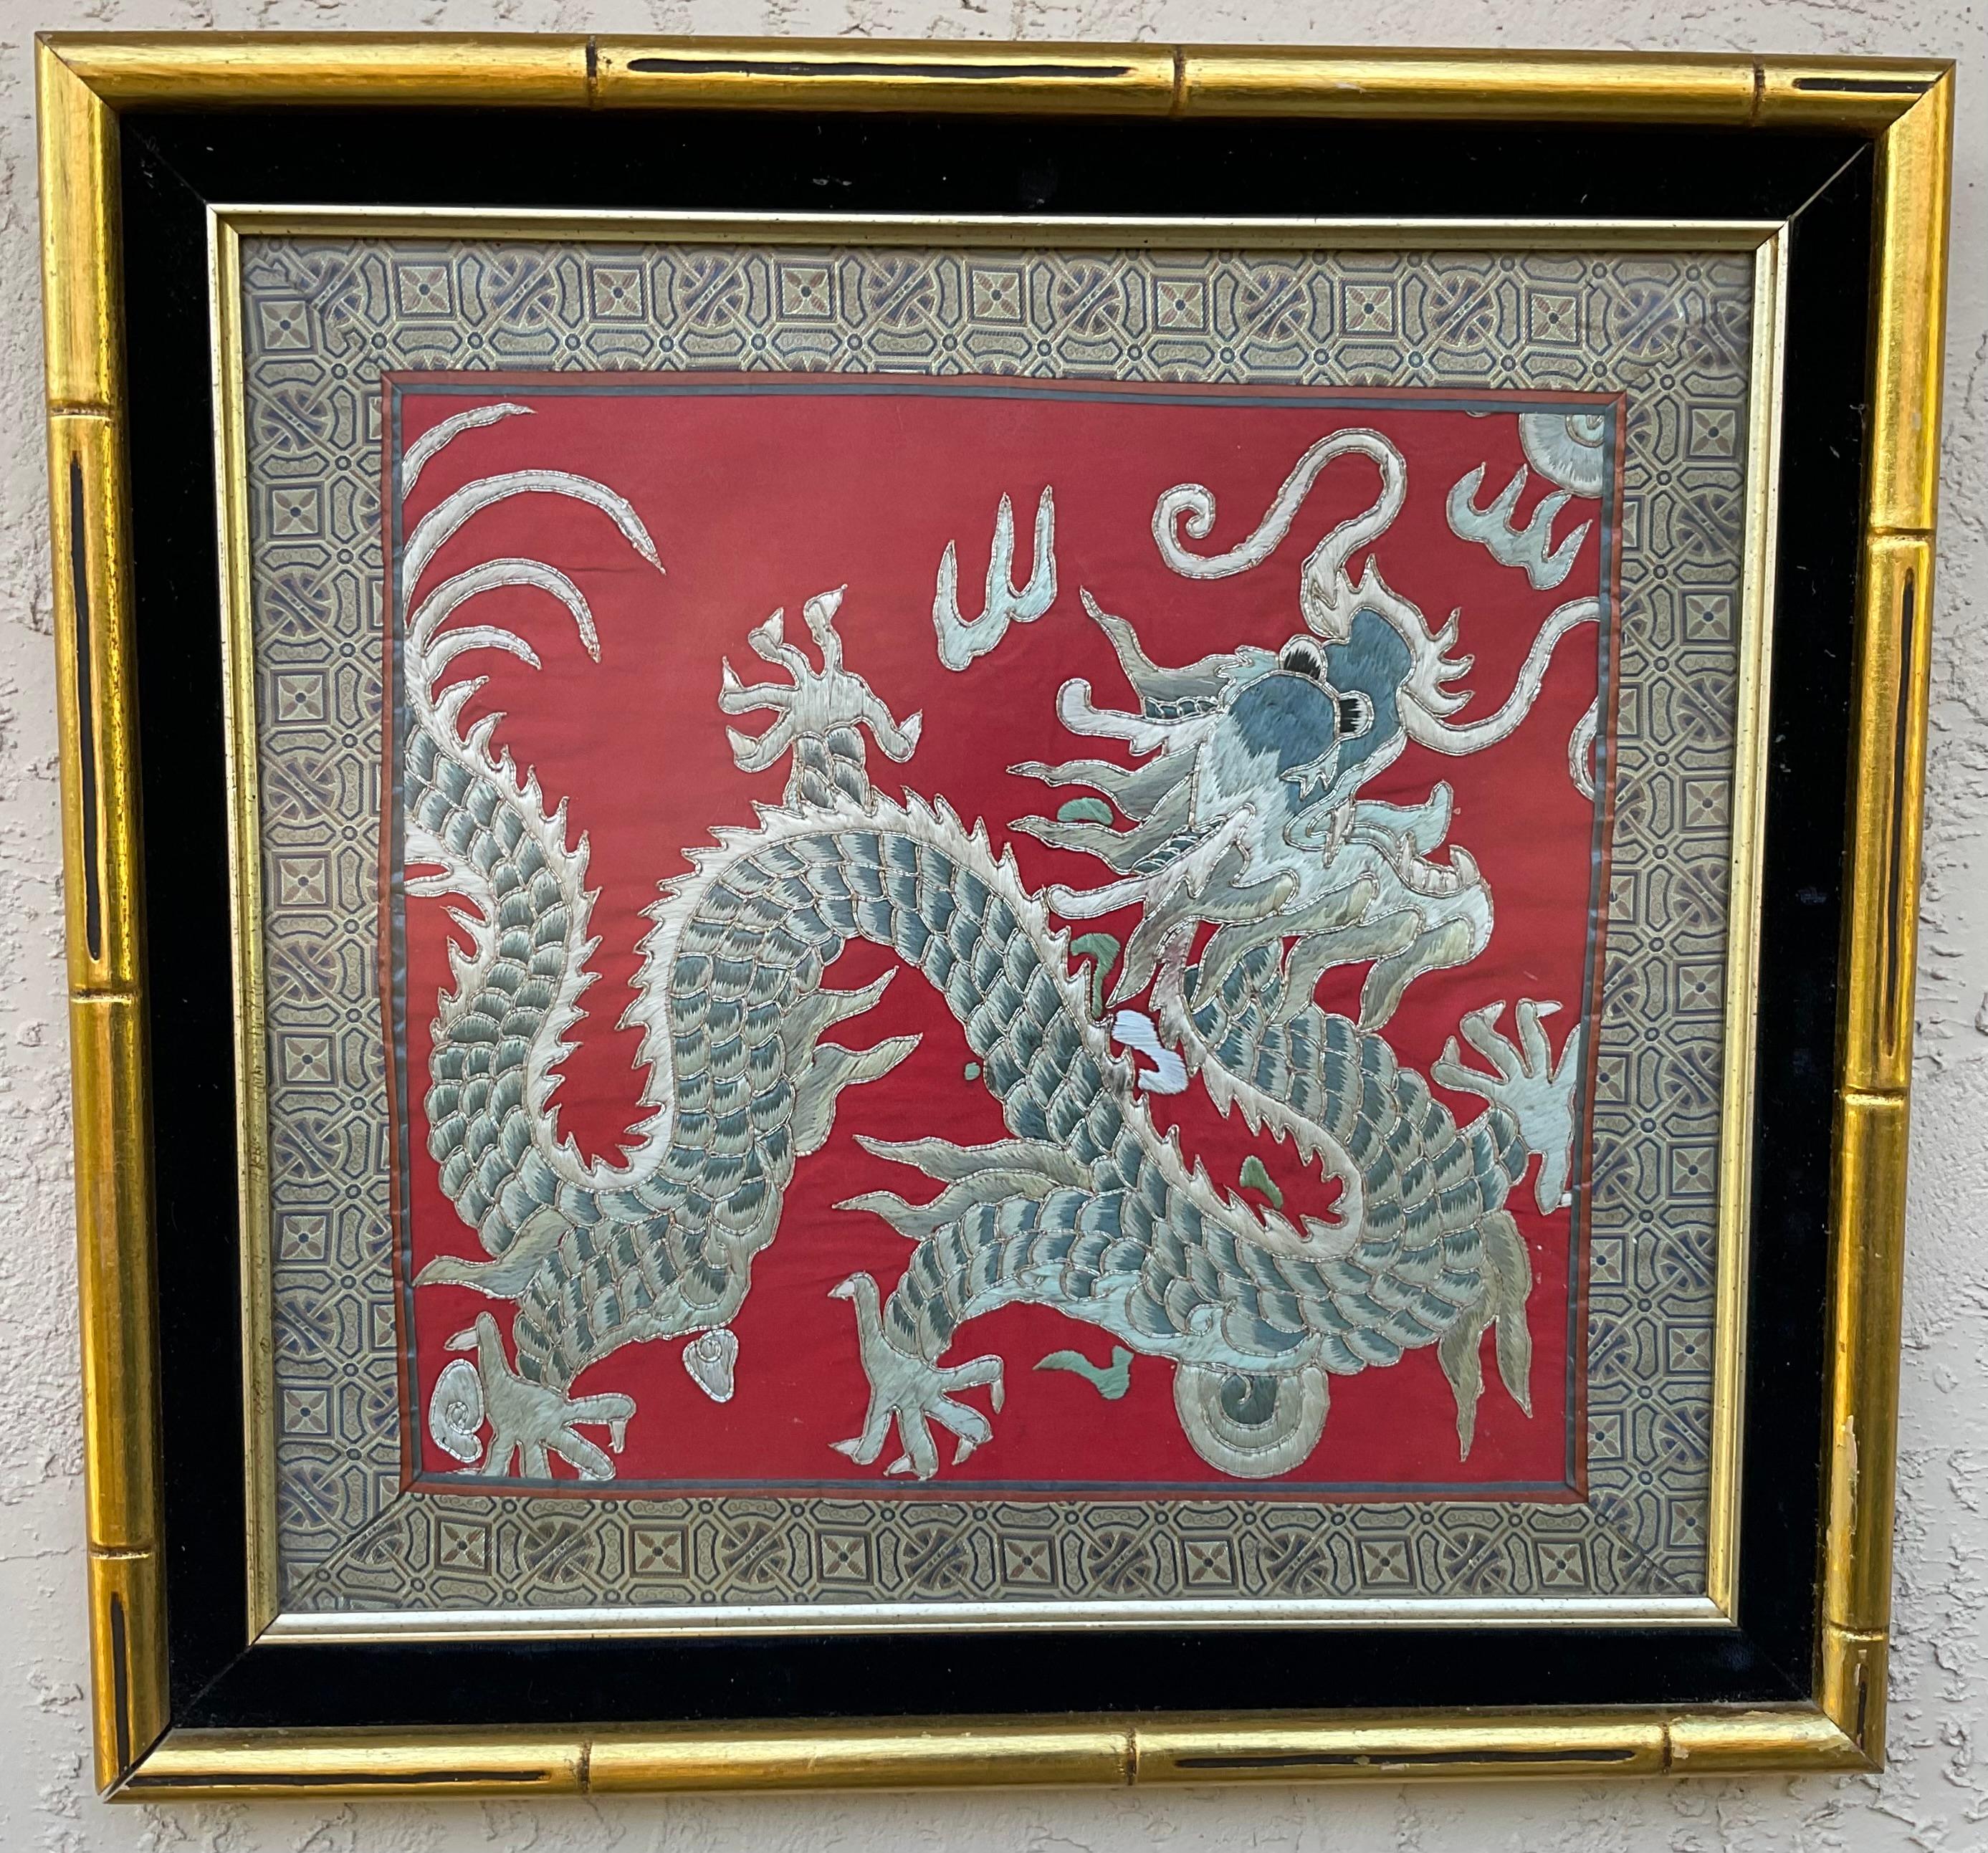 
Vintage  Textile chinois, avec une broderie finement détaillée d'un dragon, sur  fond de soie rouge. Présenté dans un cadre contemporain en bois doré avec tapis en velours noir. 
Taille du textile uniquement 